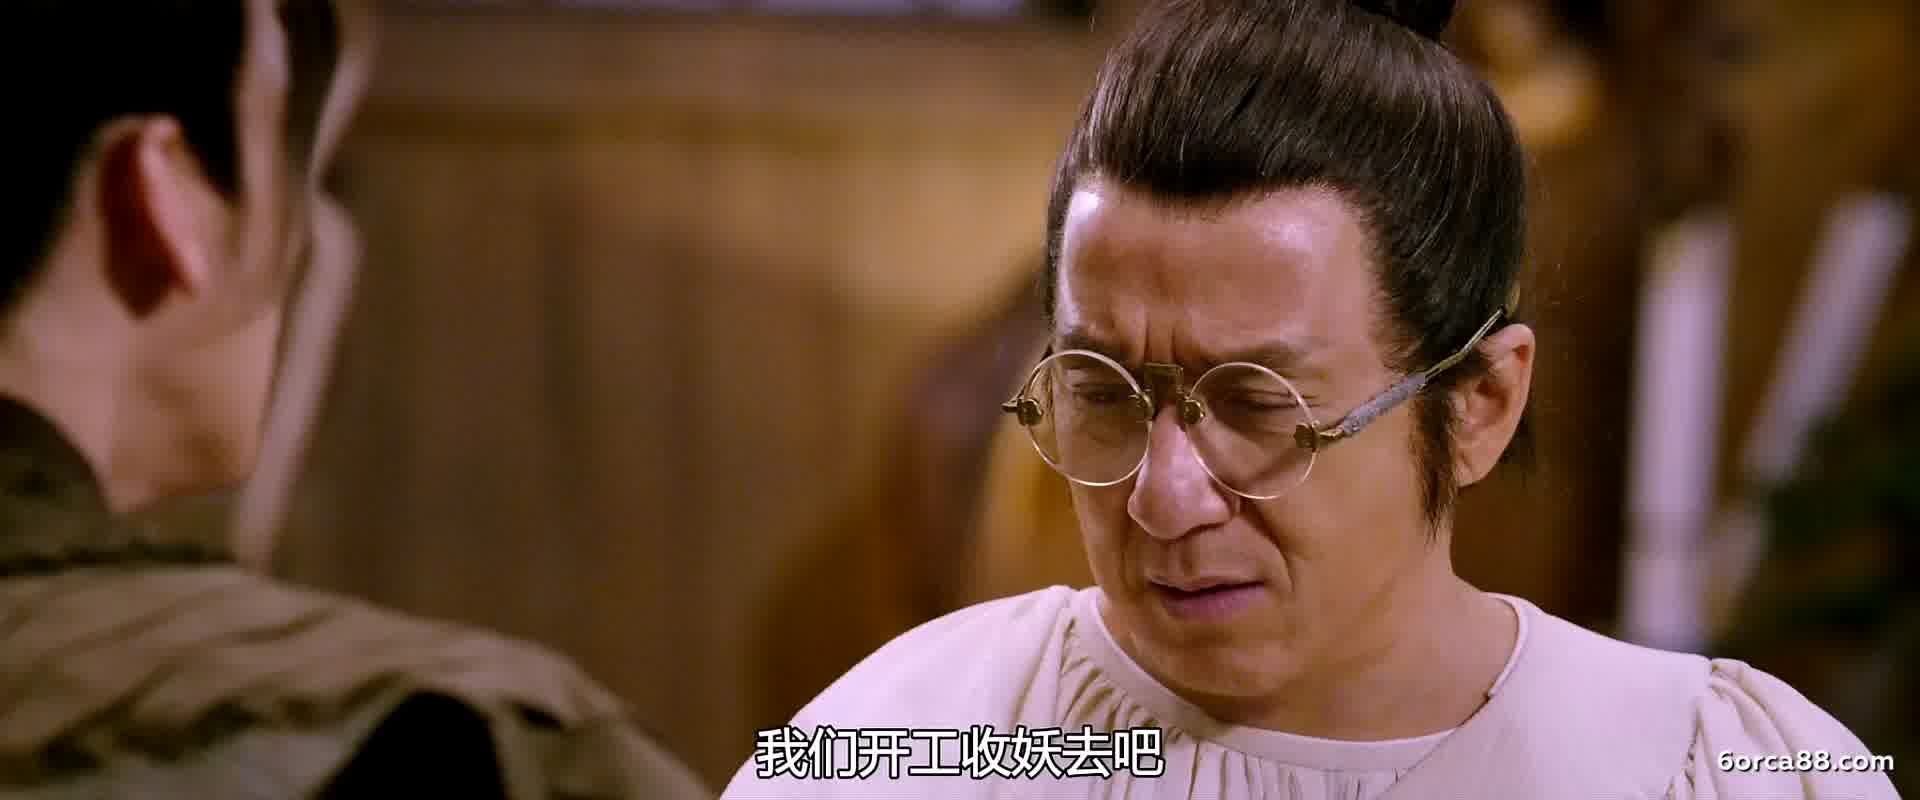  :     / Shen tan pu song ling zhi lan re xian zong (2019) WEB-DLRip | WEB-DL 720p| WEB-DL 1080p